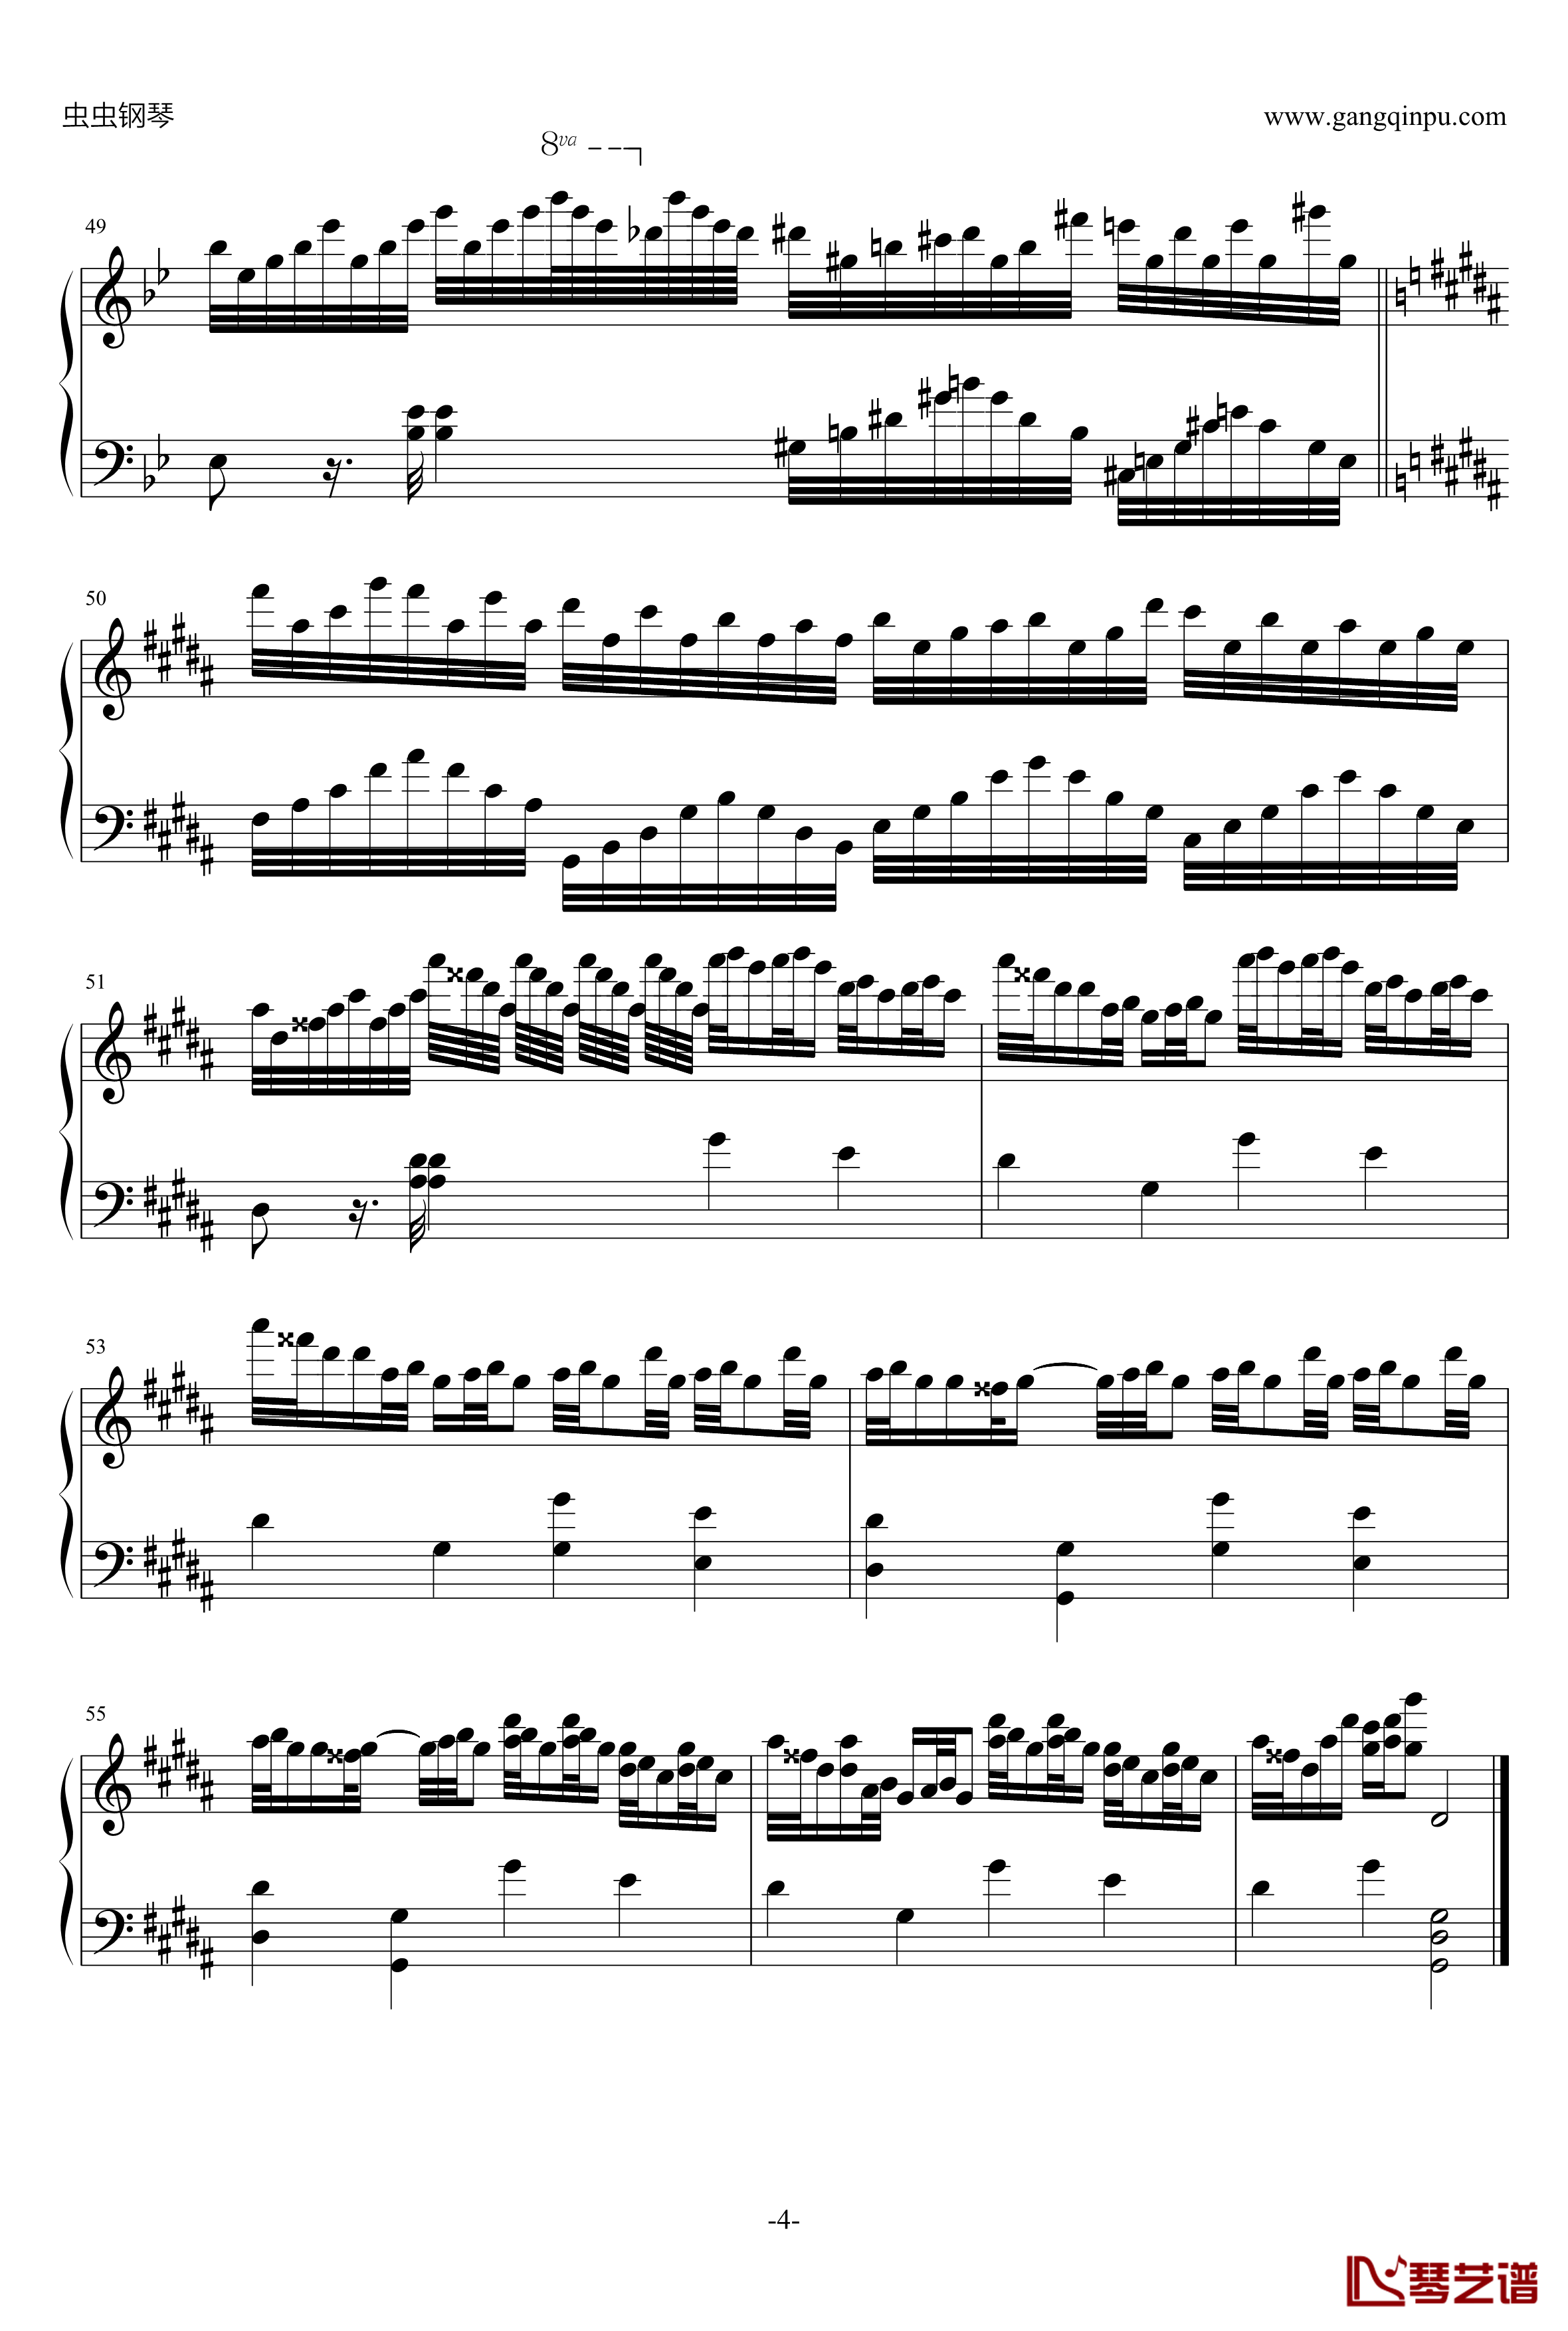 克罗地亚狂想曲钢琴谱-移调修改版-马克西姆-Maksim·Mrvica4